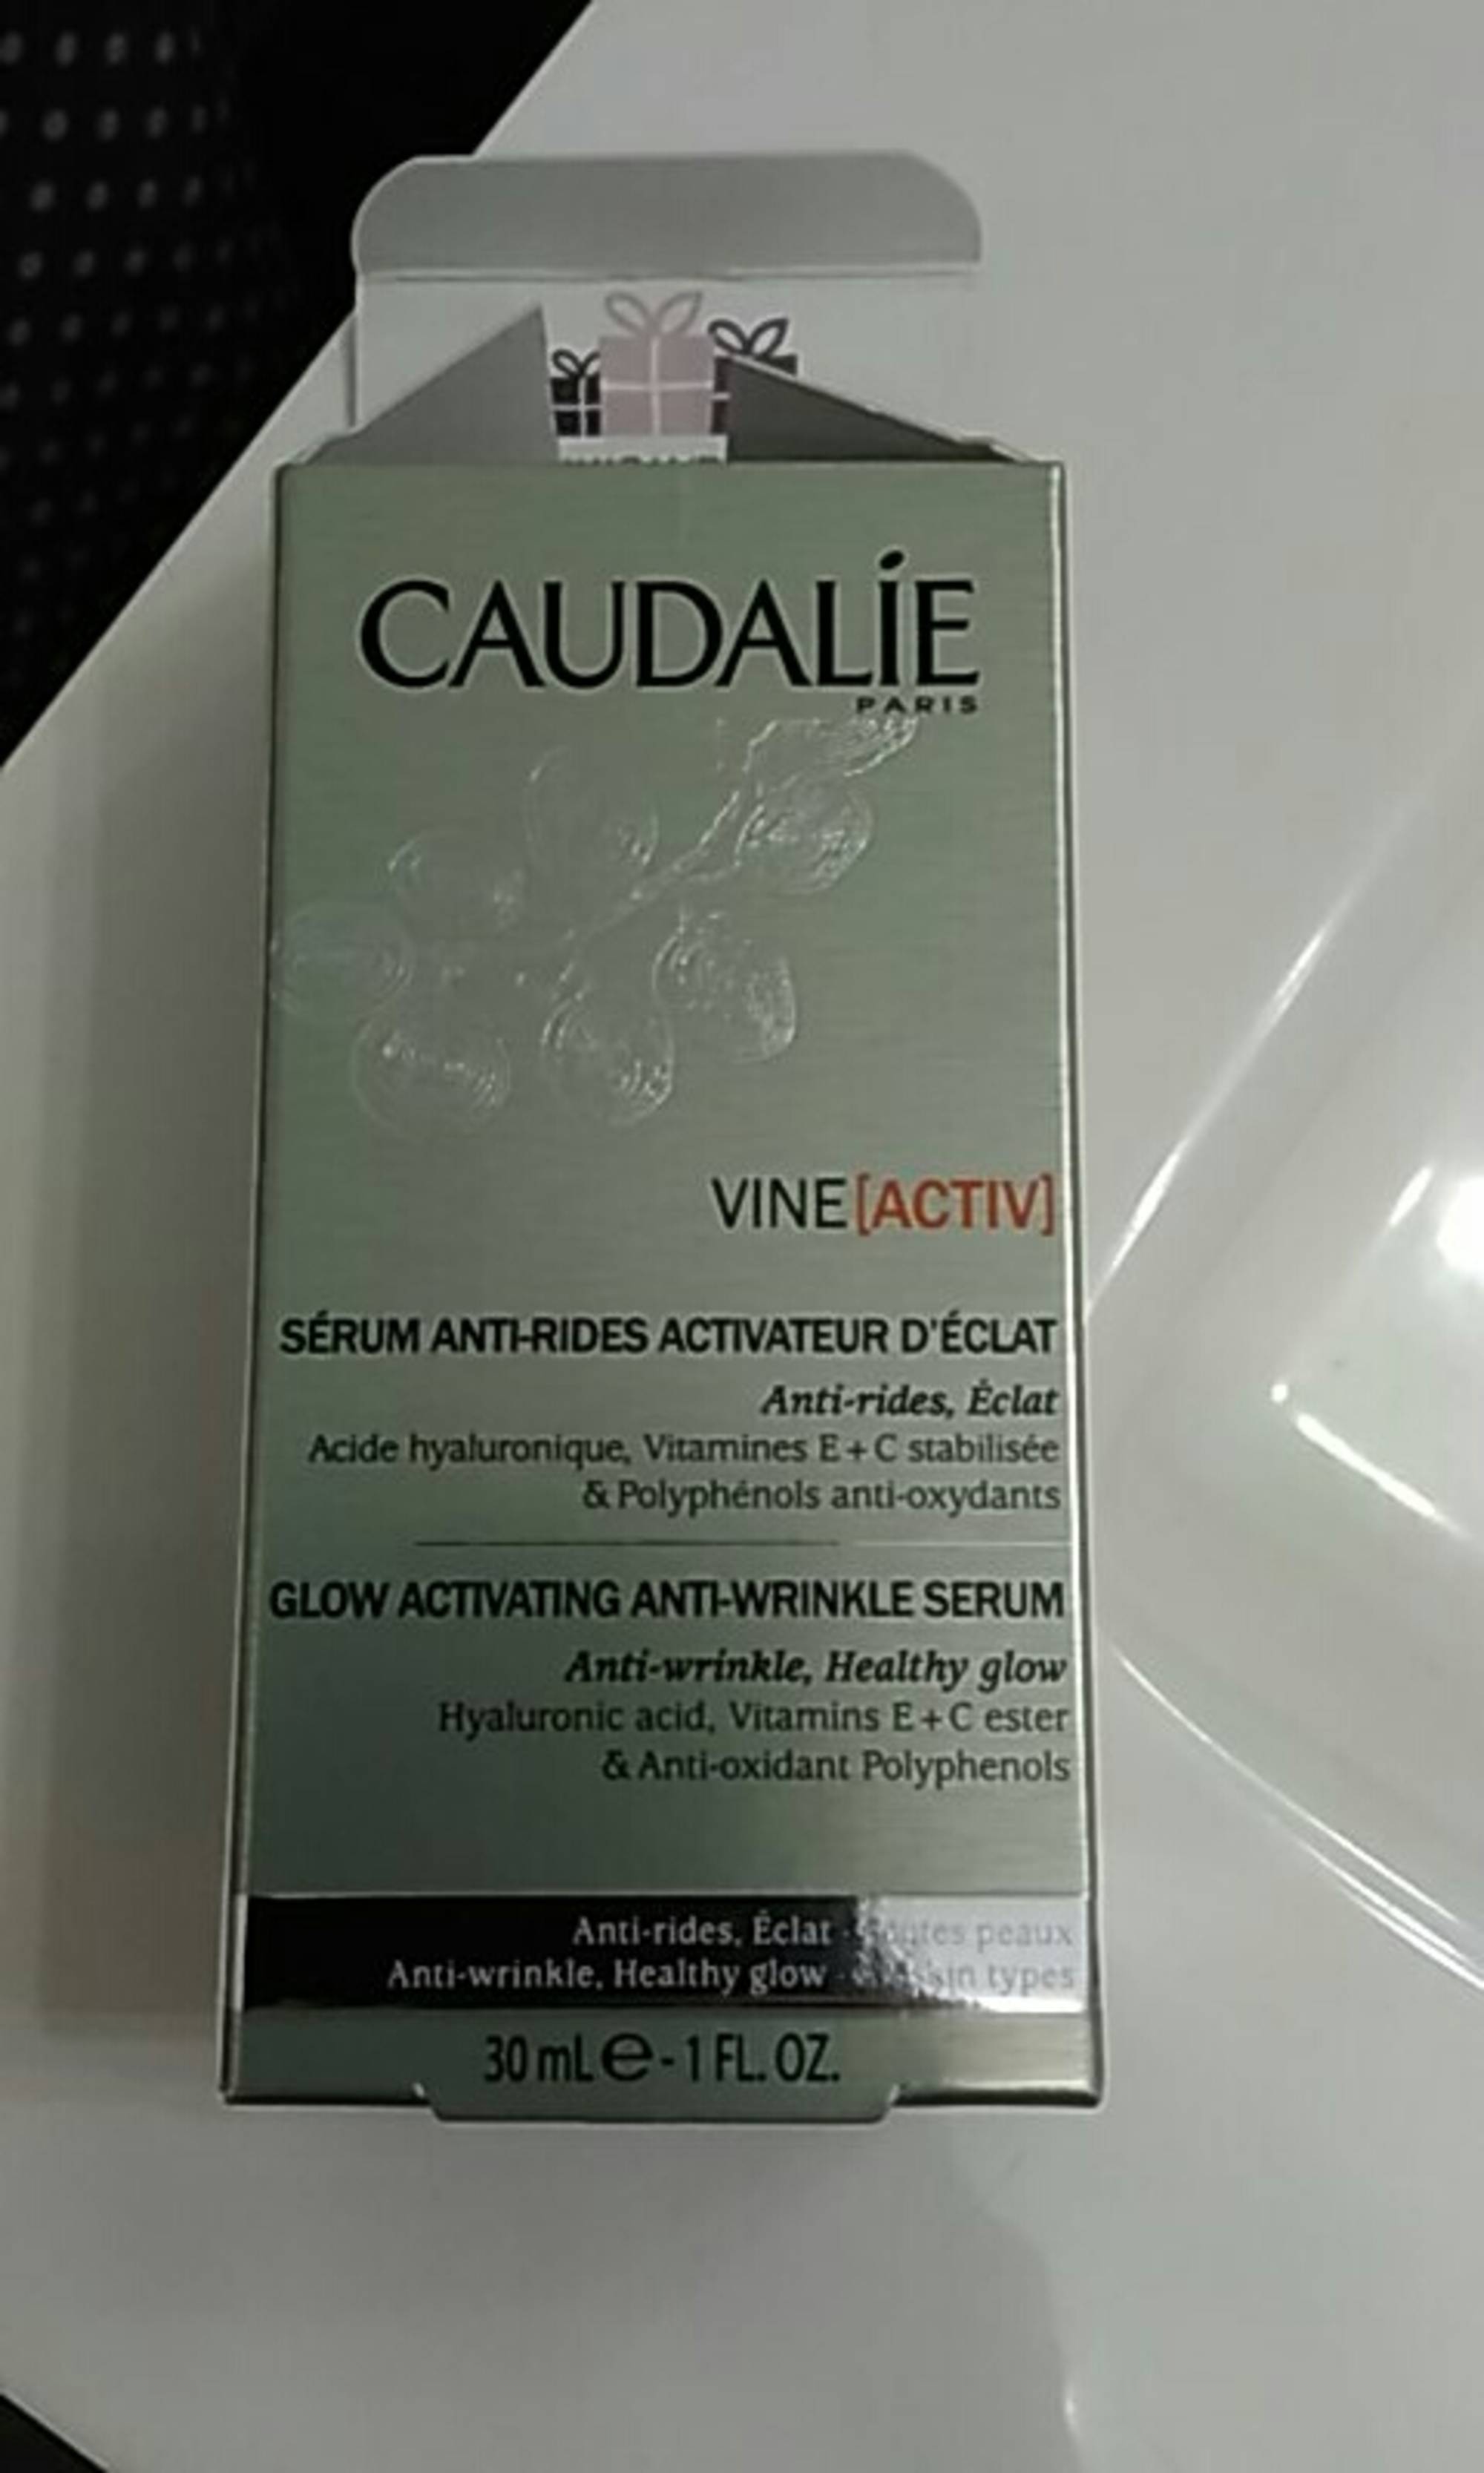 CAUDALIE - Vine (activ) - Sérum anti-rides activateur d'éclat